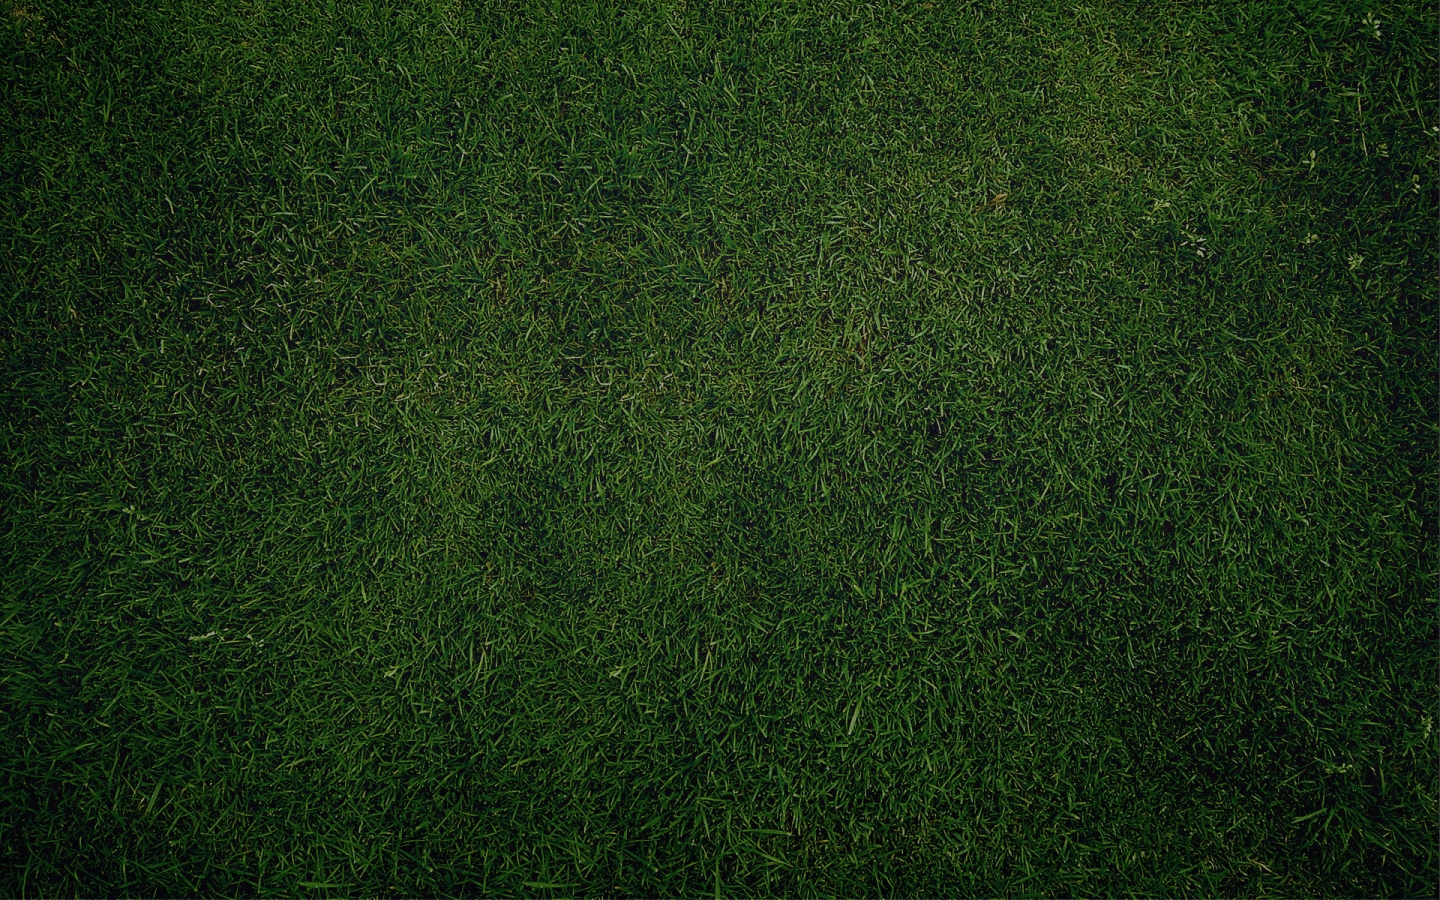 Green Grass for 1440 x 900 widescreen resolution